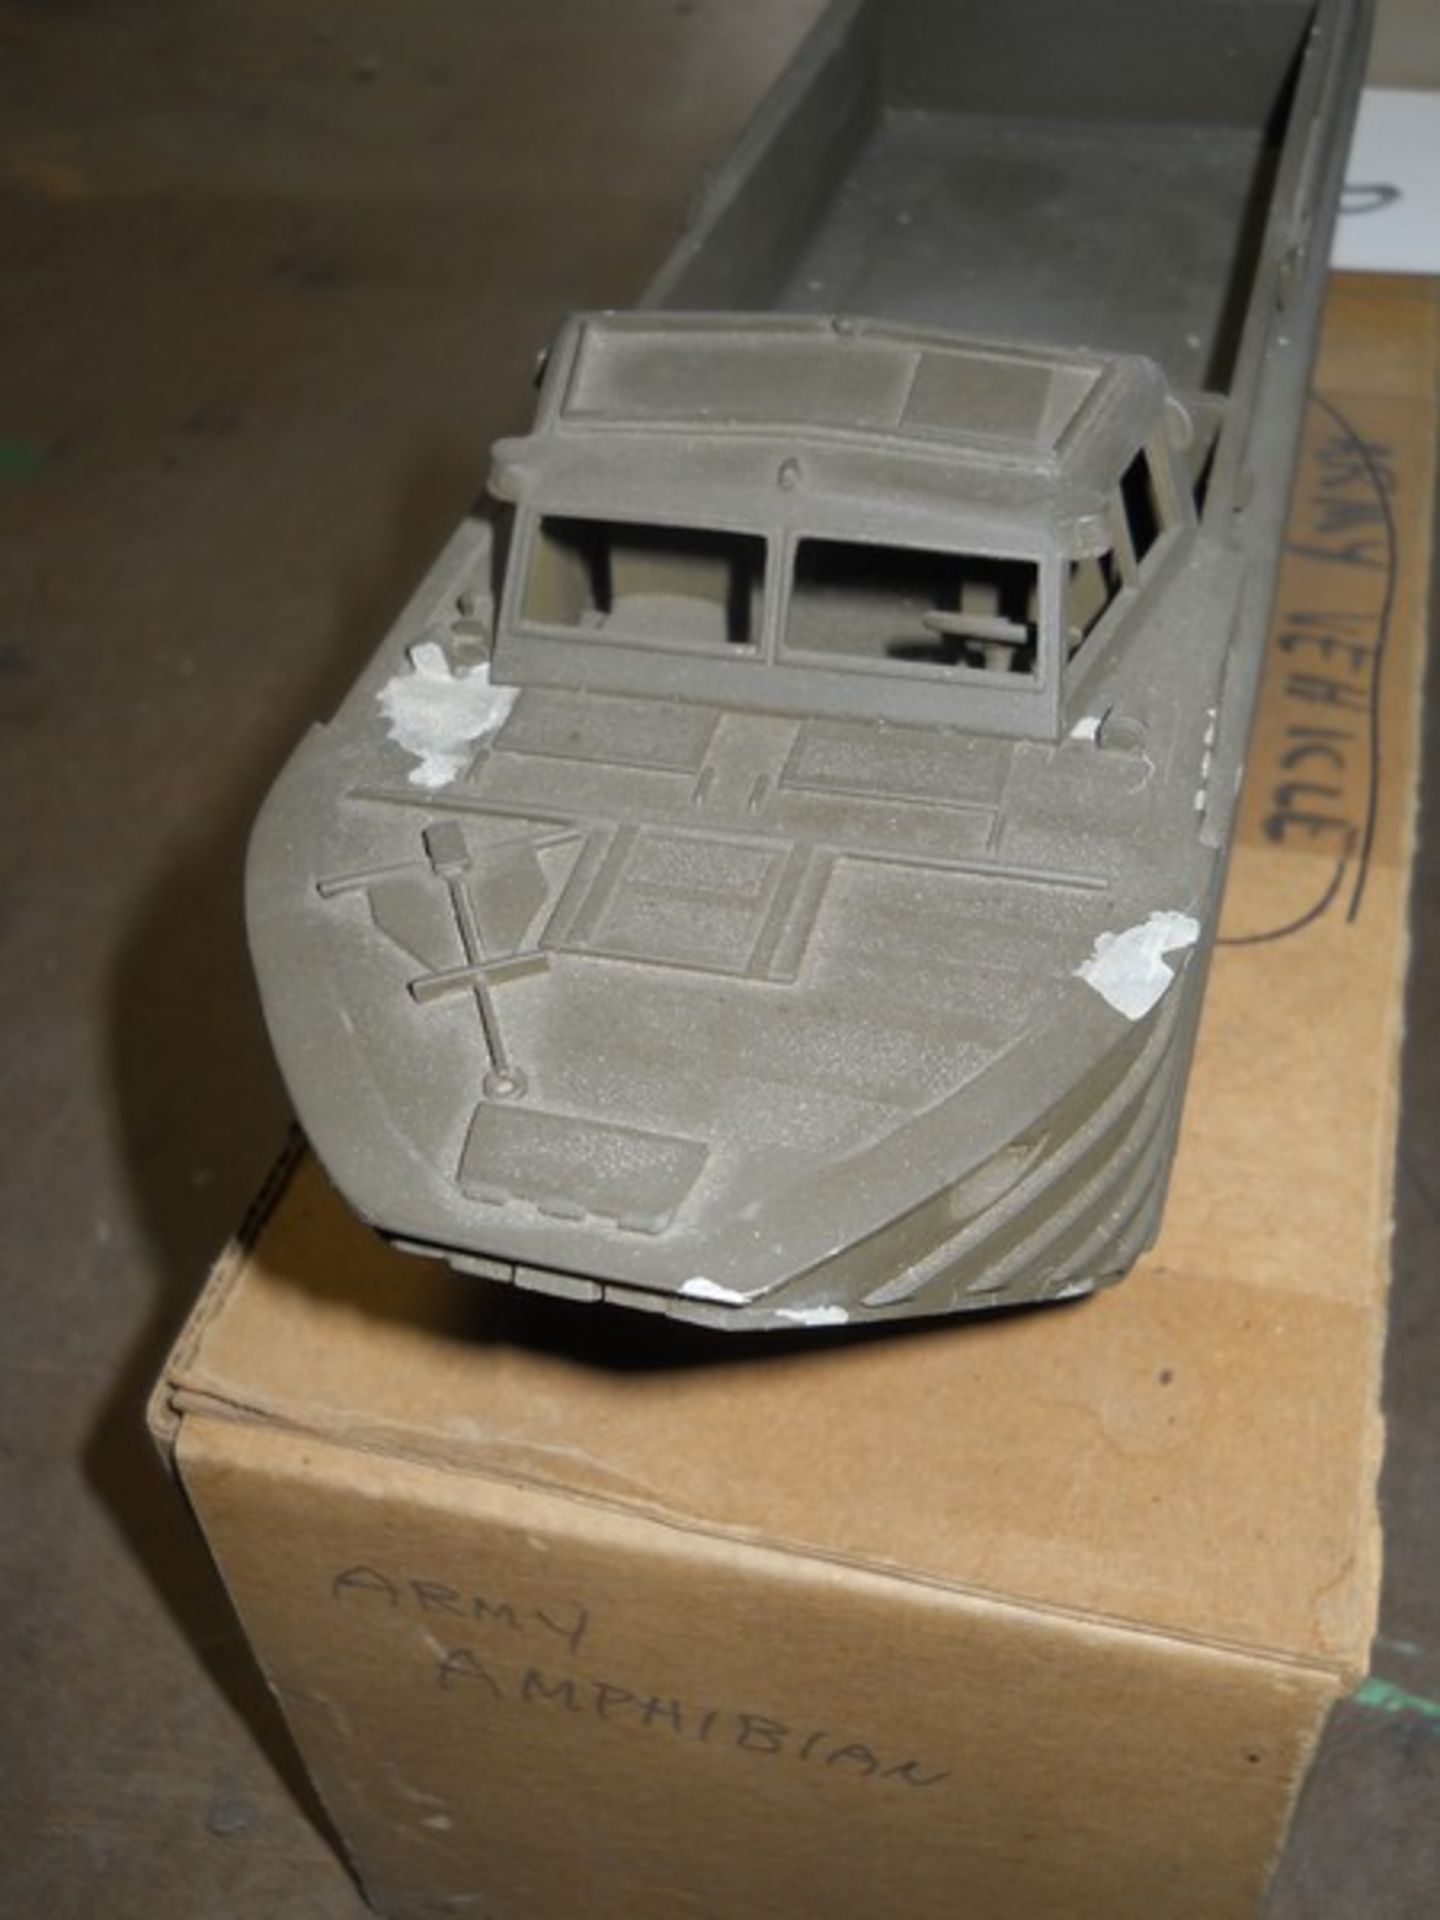 Model Amphibious Vehicle - Image 2 of 4